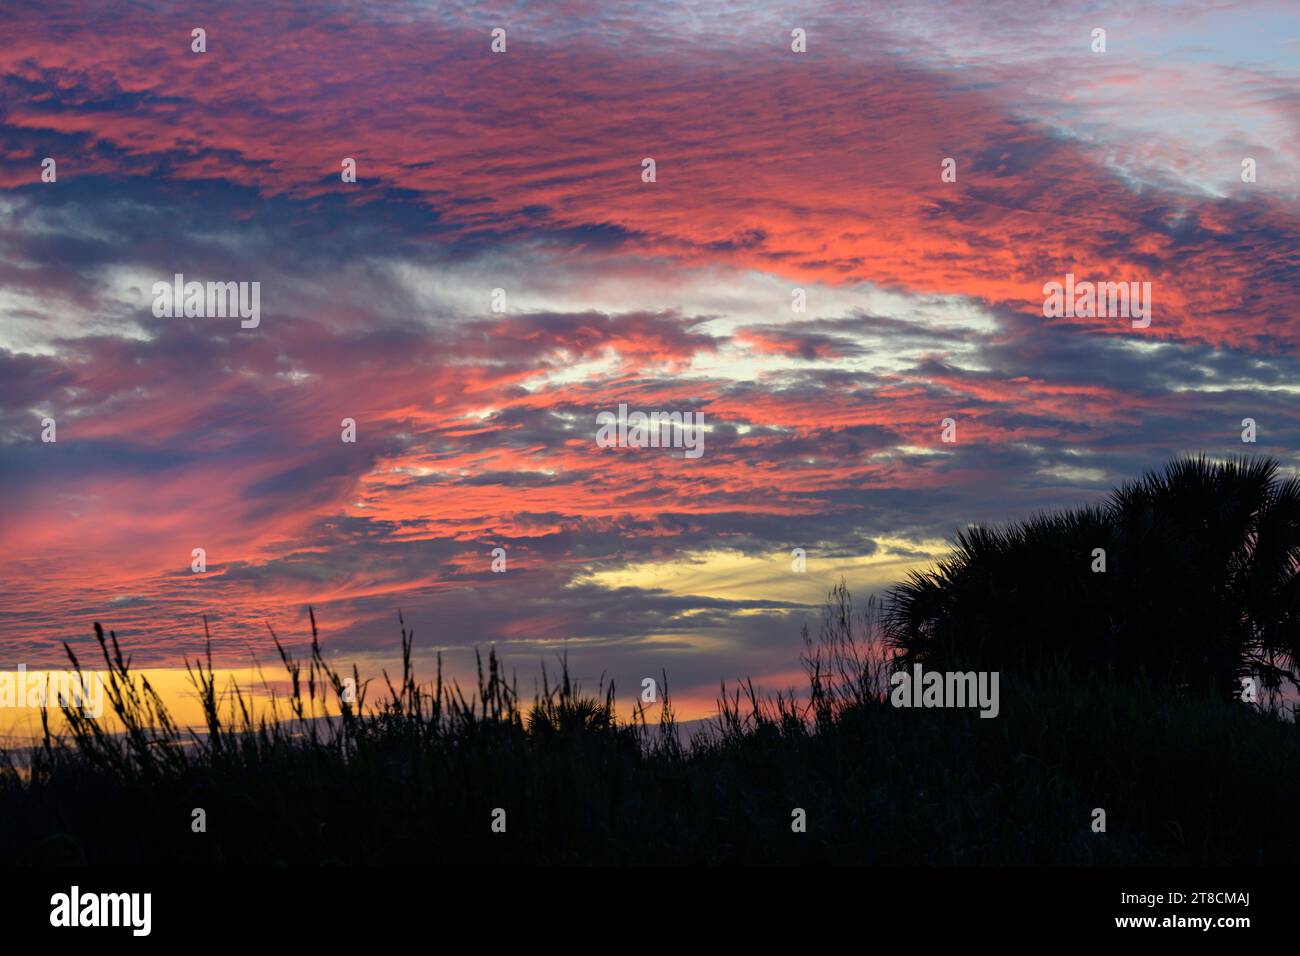 Sunset sky over Texas wetlands along the Gulf of Mexico, Galveston, Texas, USA. Stock Photo